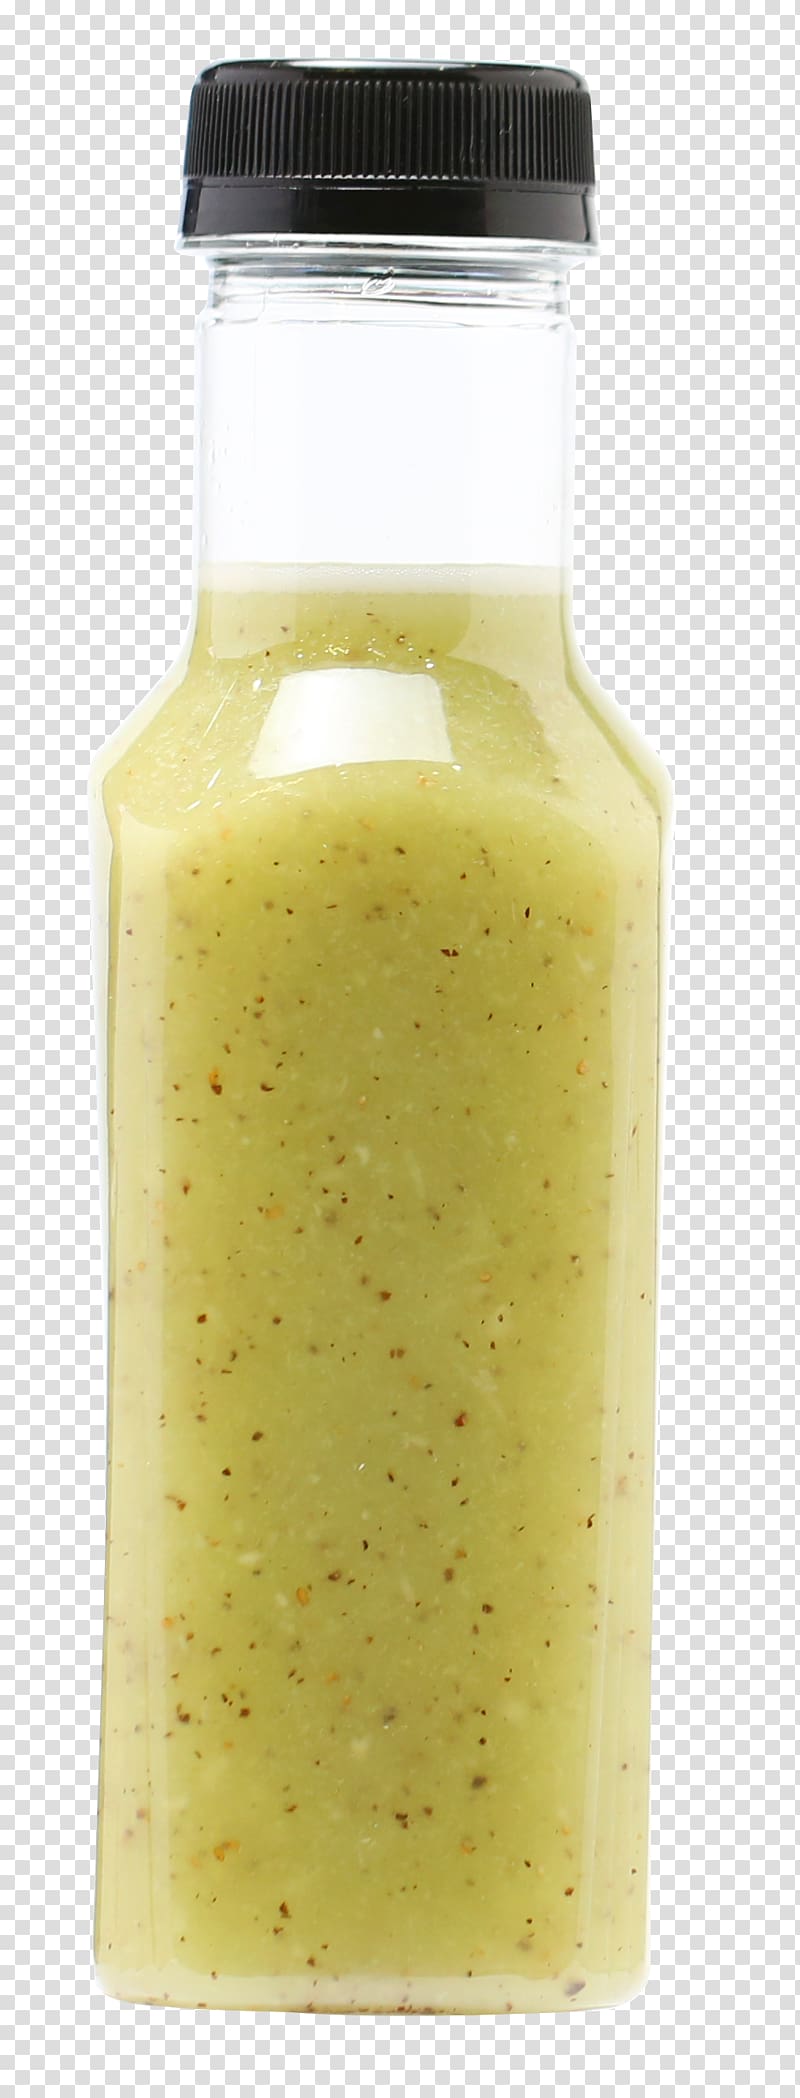 Condiment Flavor, A bottle of juice transparent background PNG clipart